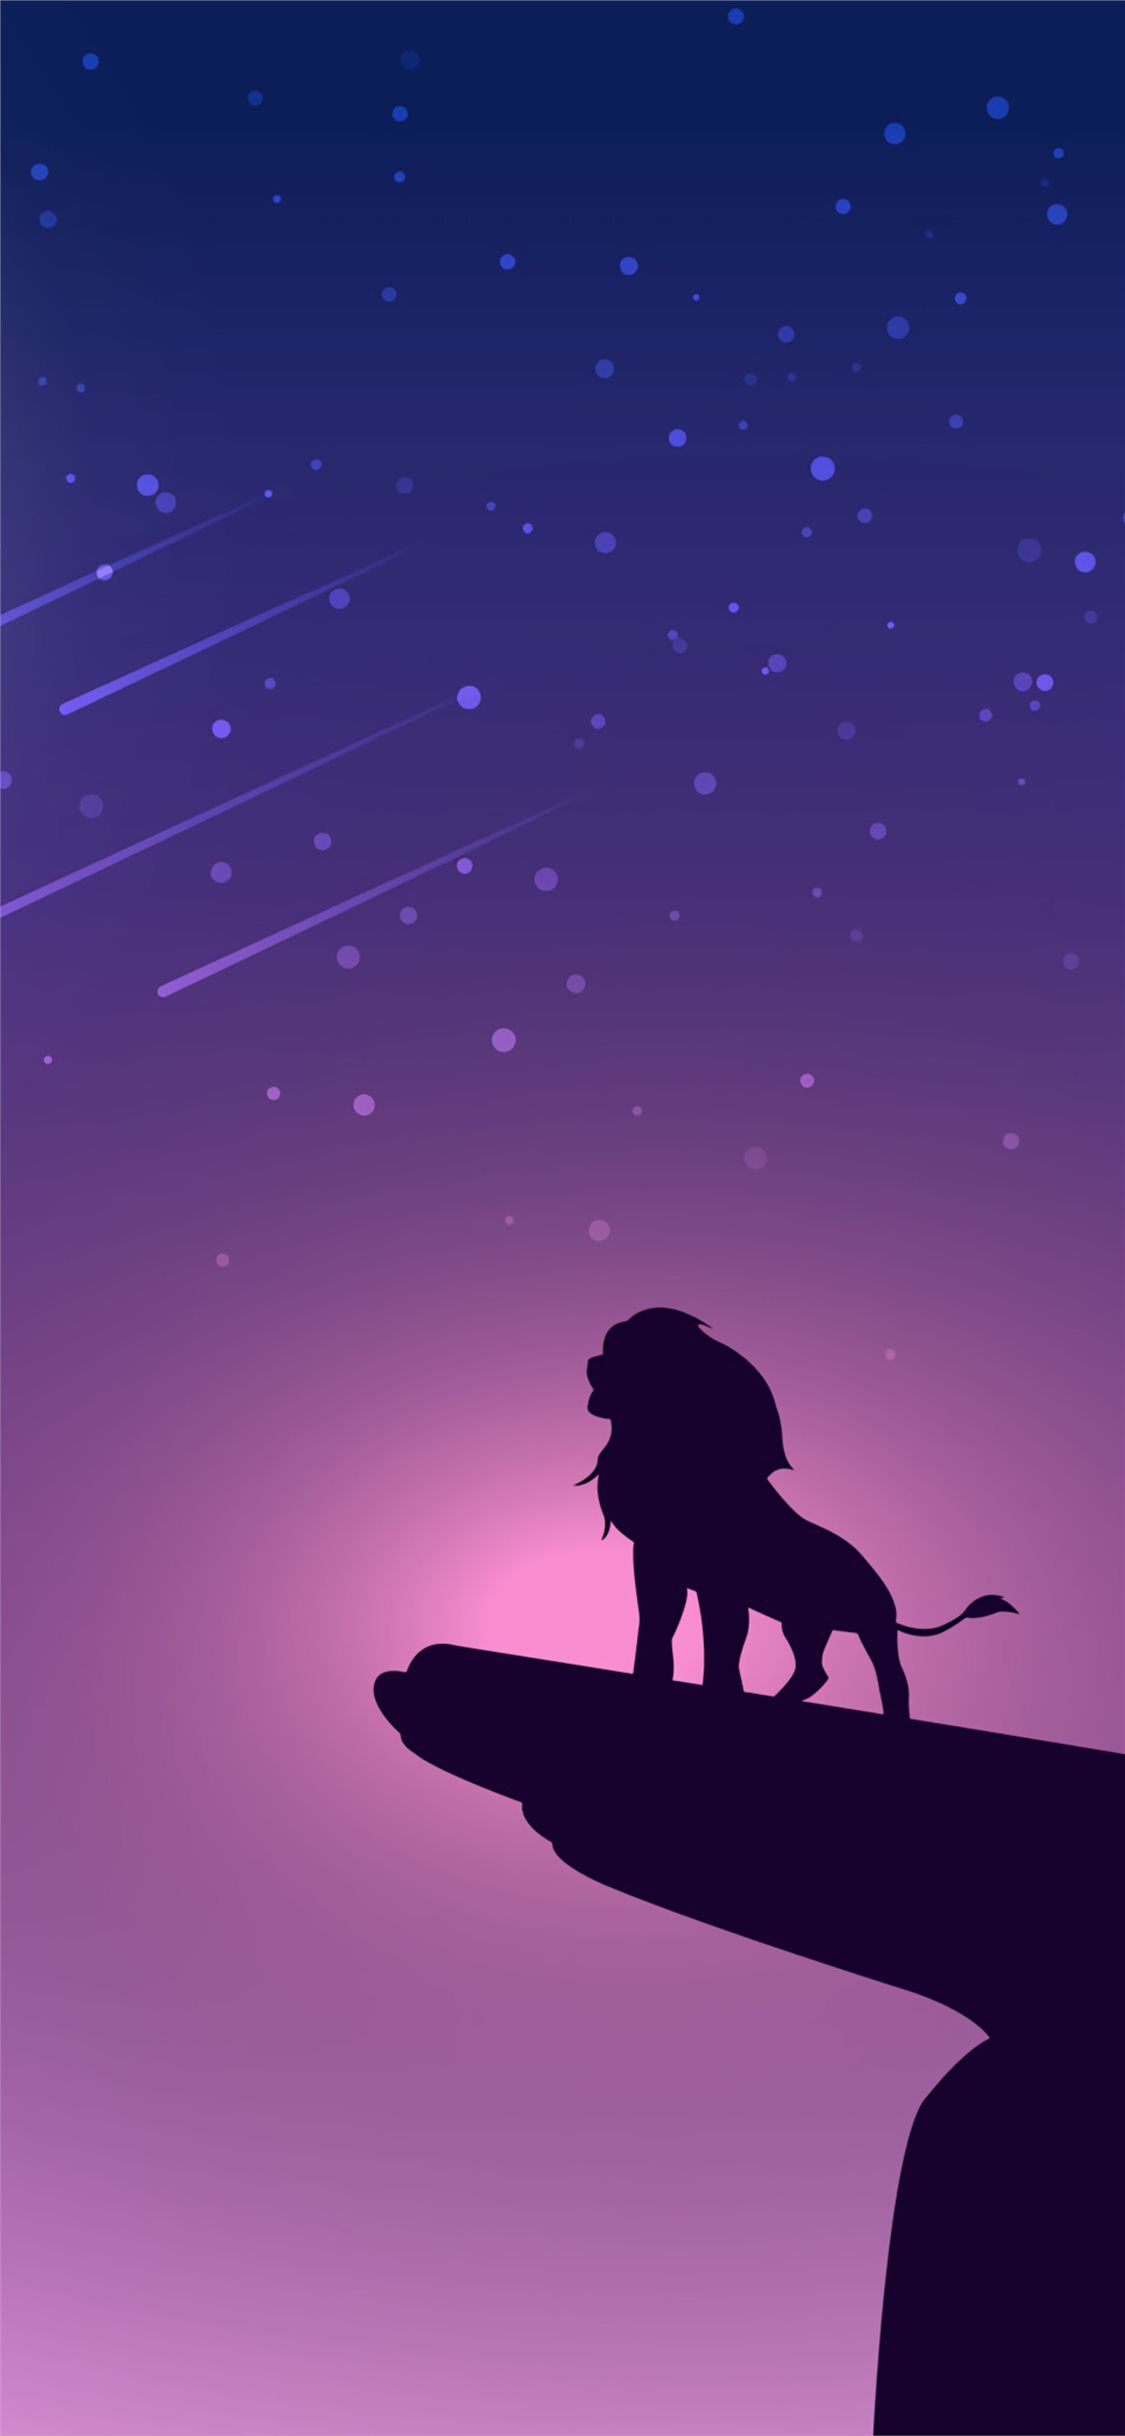 The Simba Thelionking Lion 2019movies Movies 4k Disney